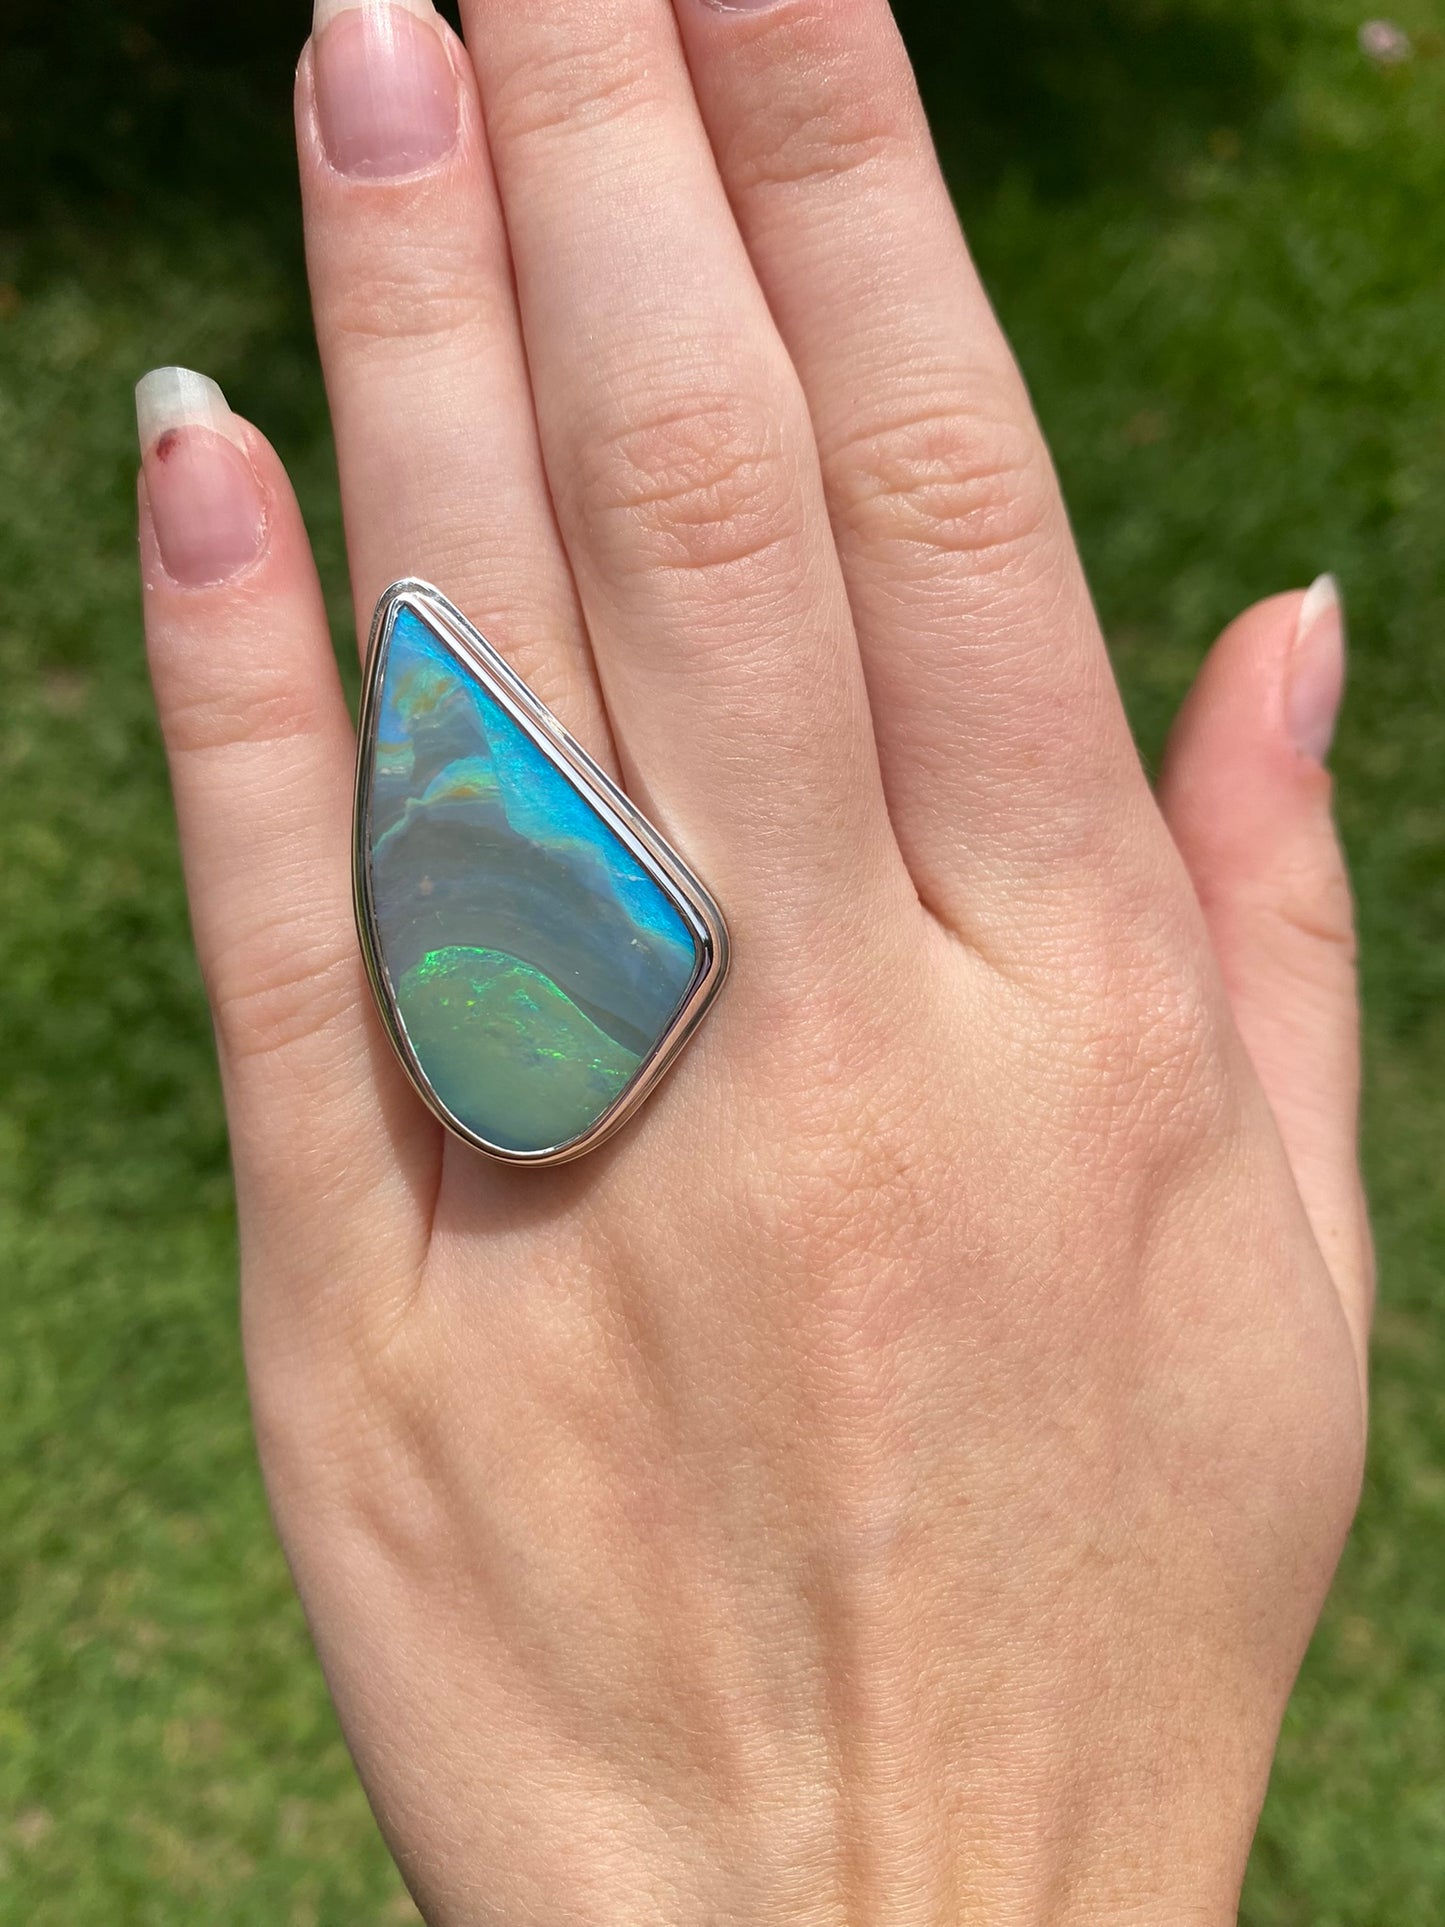 Peacock Sail Opal Ring